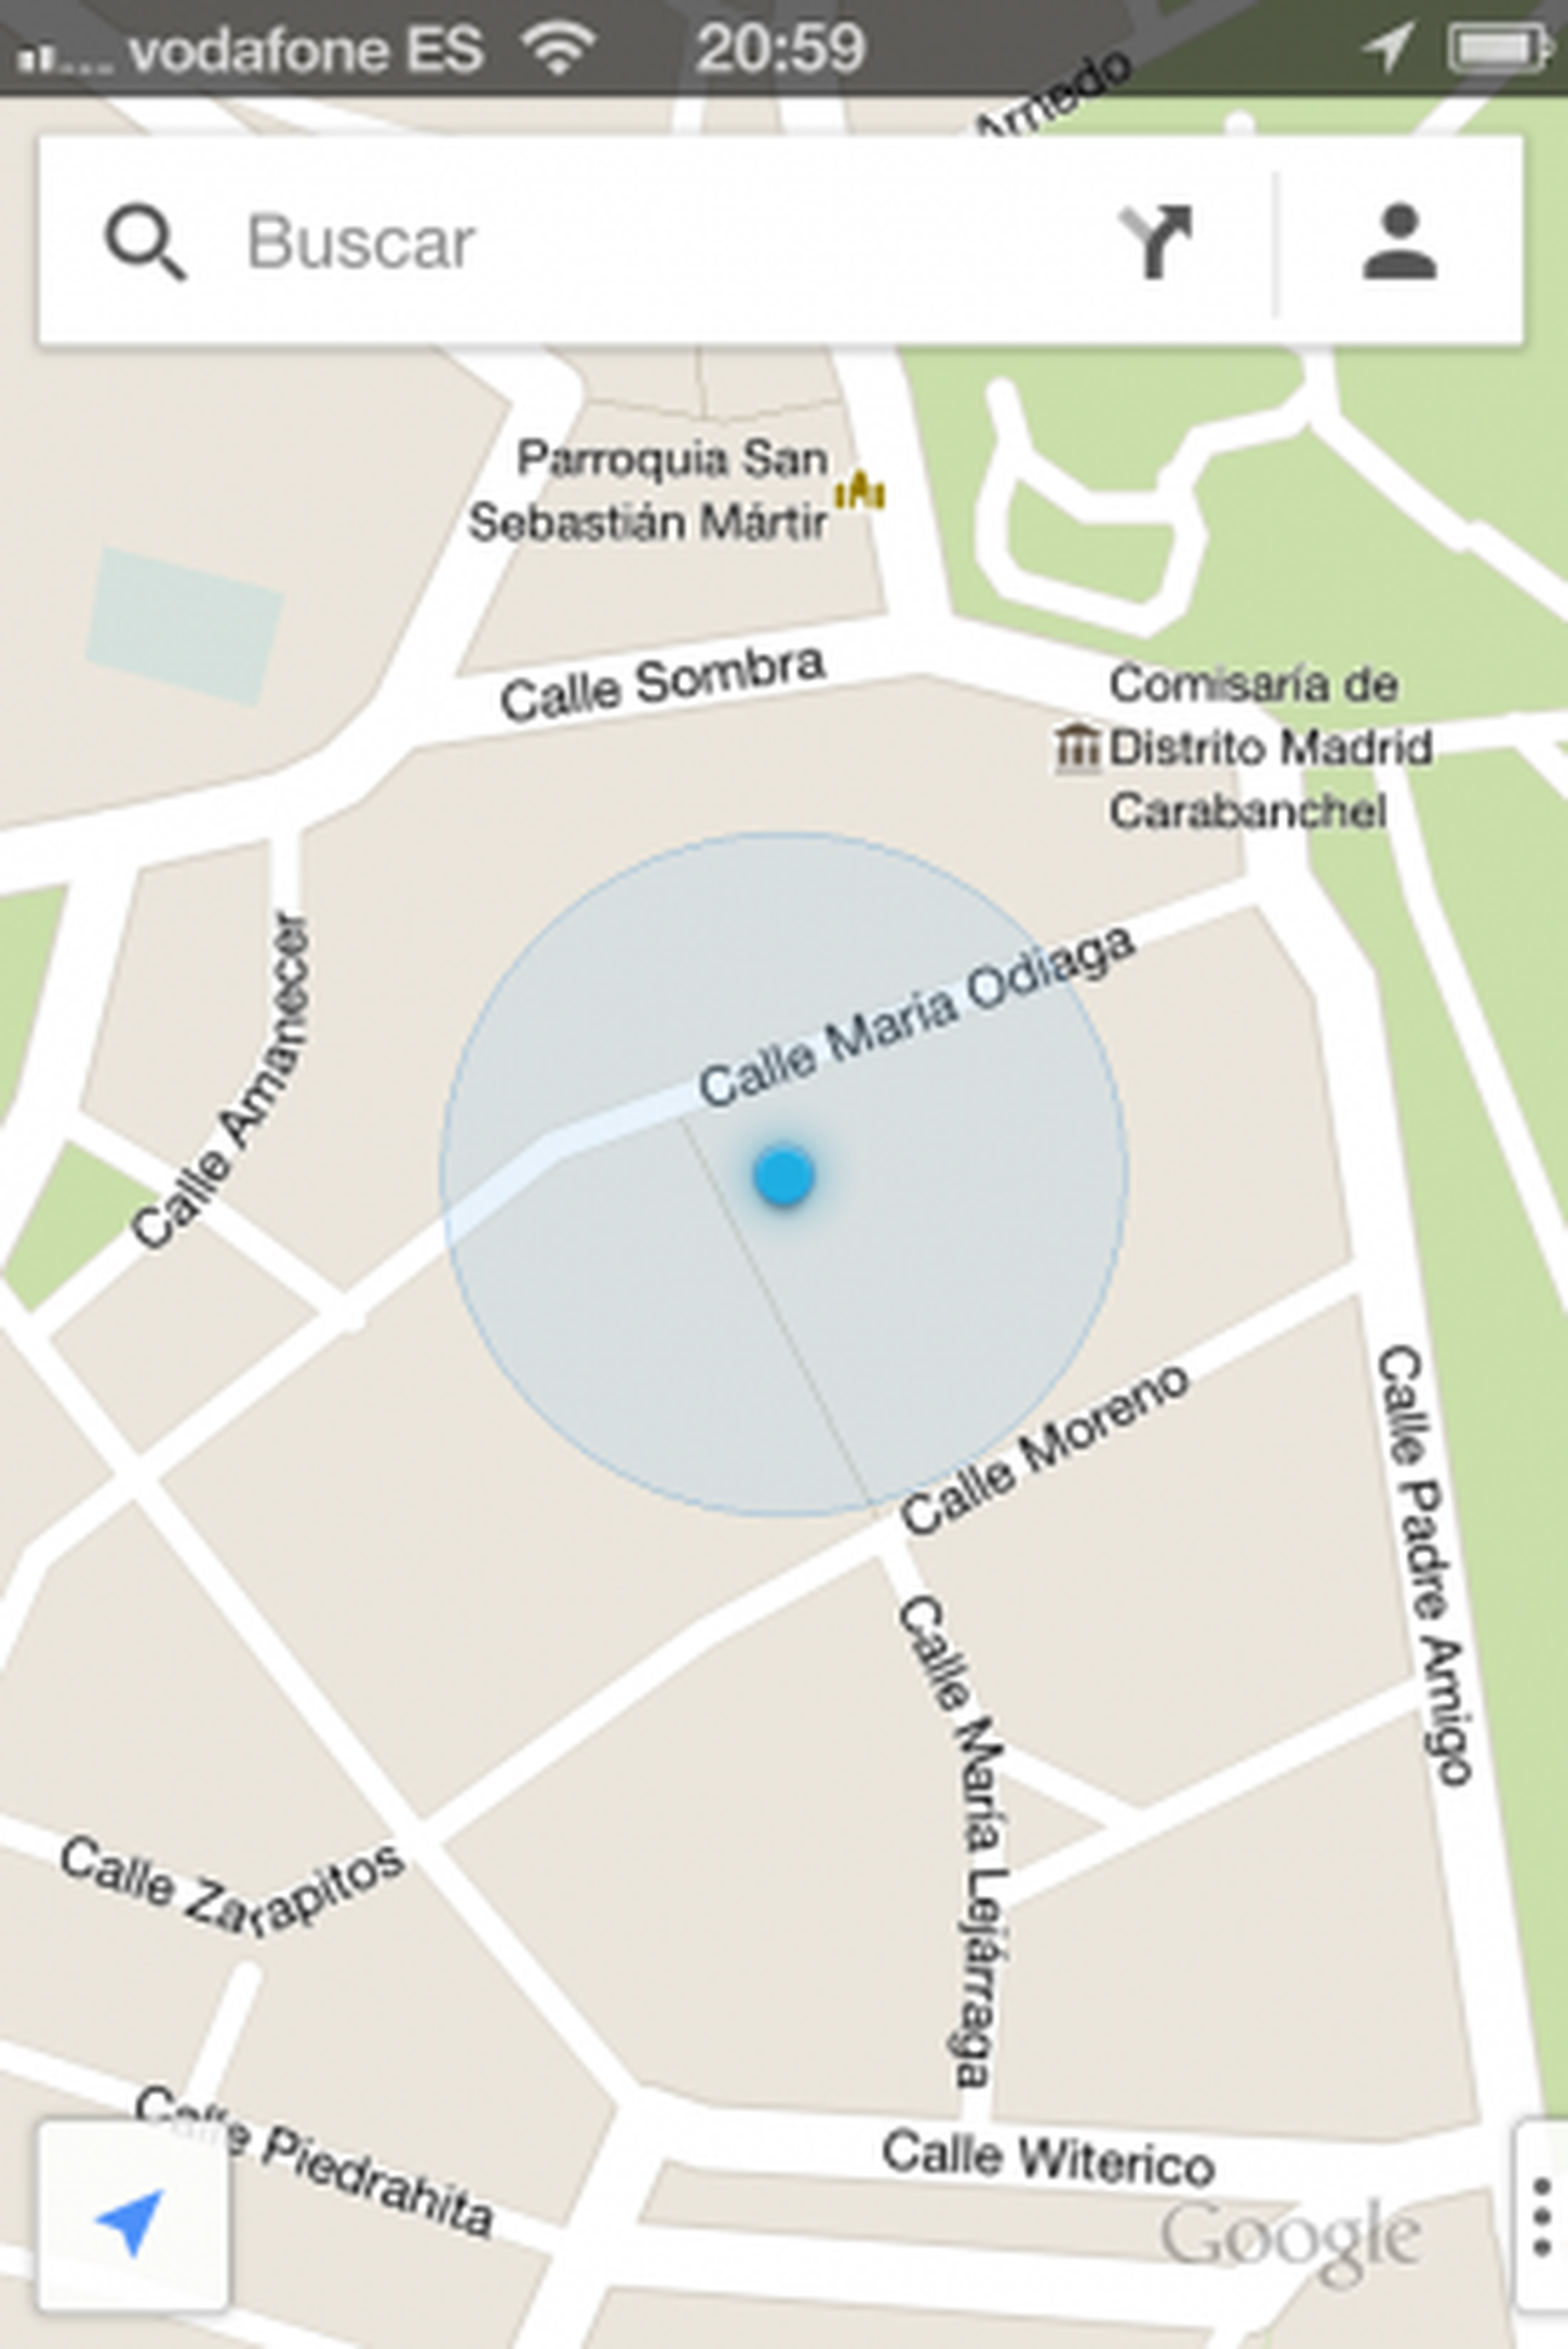 Configura tu cuenta en el nuevo Google Maps para iPhone